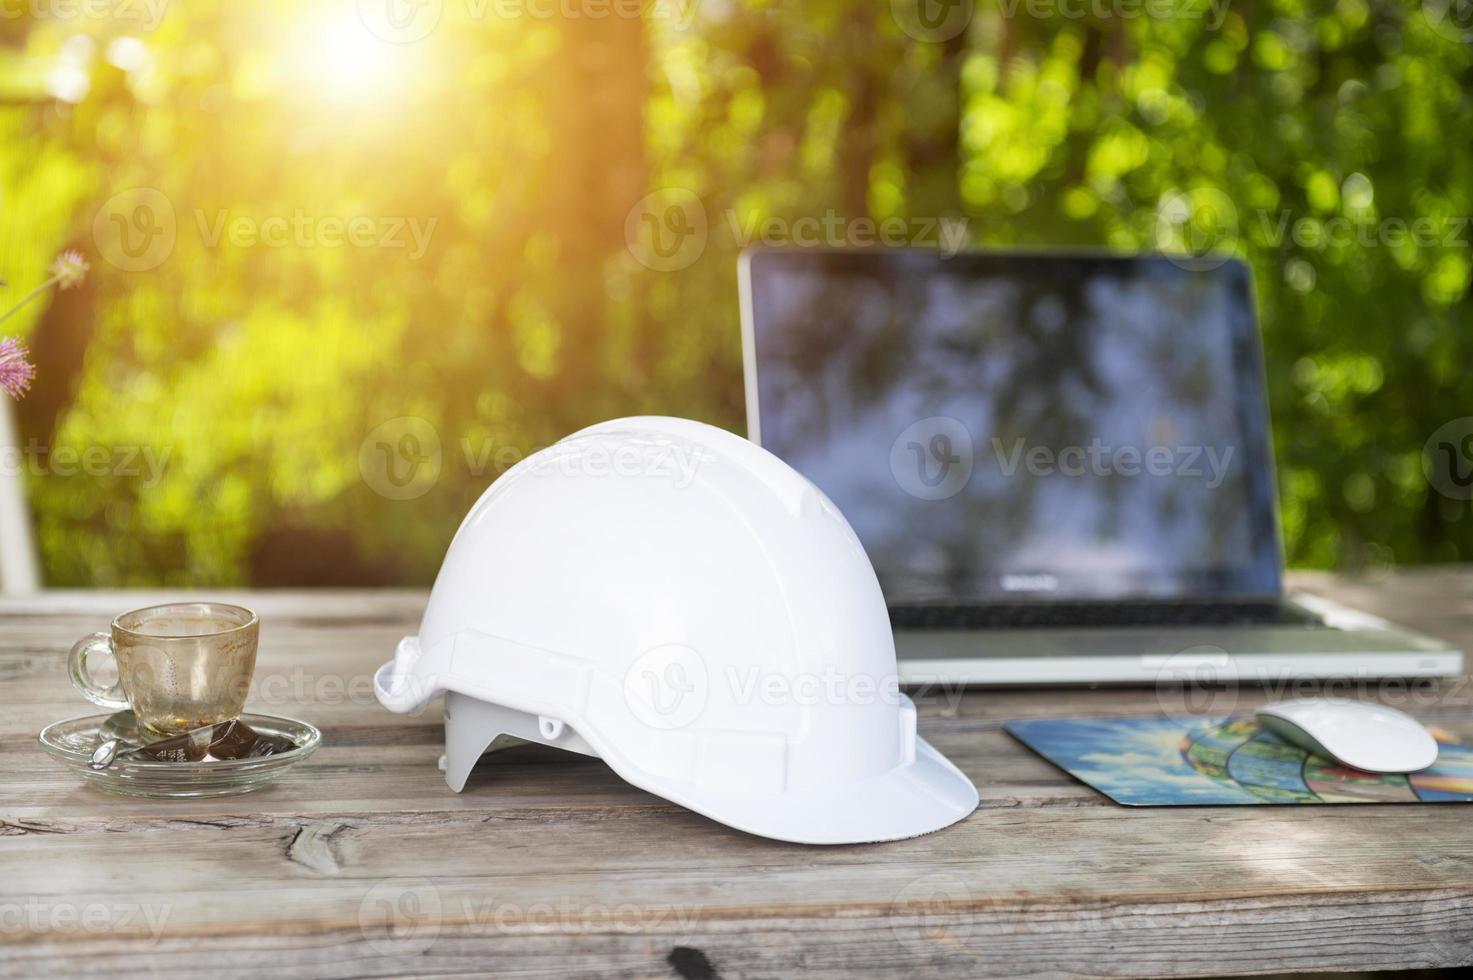 capacete branco e computador no café com fundo de luz solar, vista de engenheiro sentado planejamento de construção foto